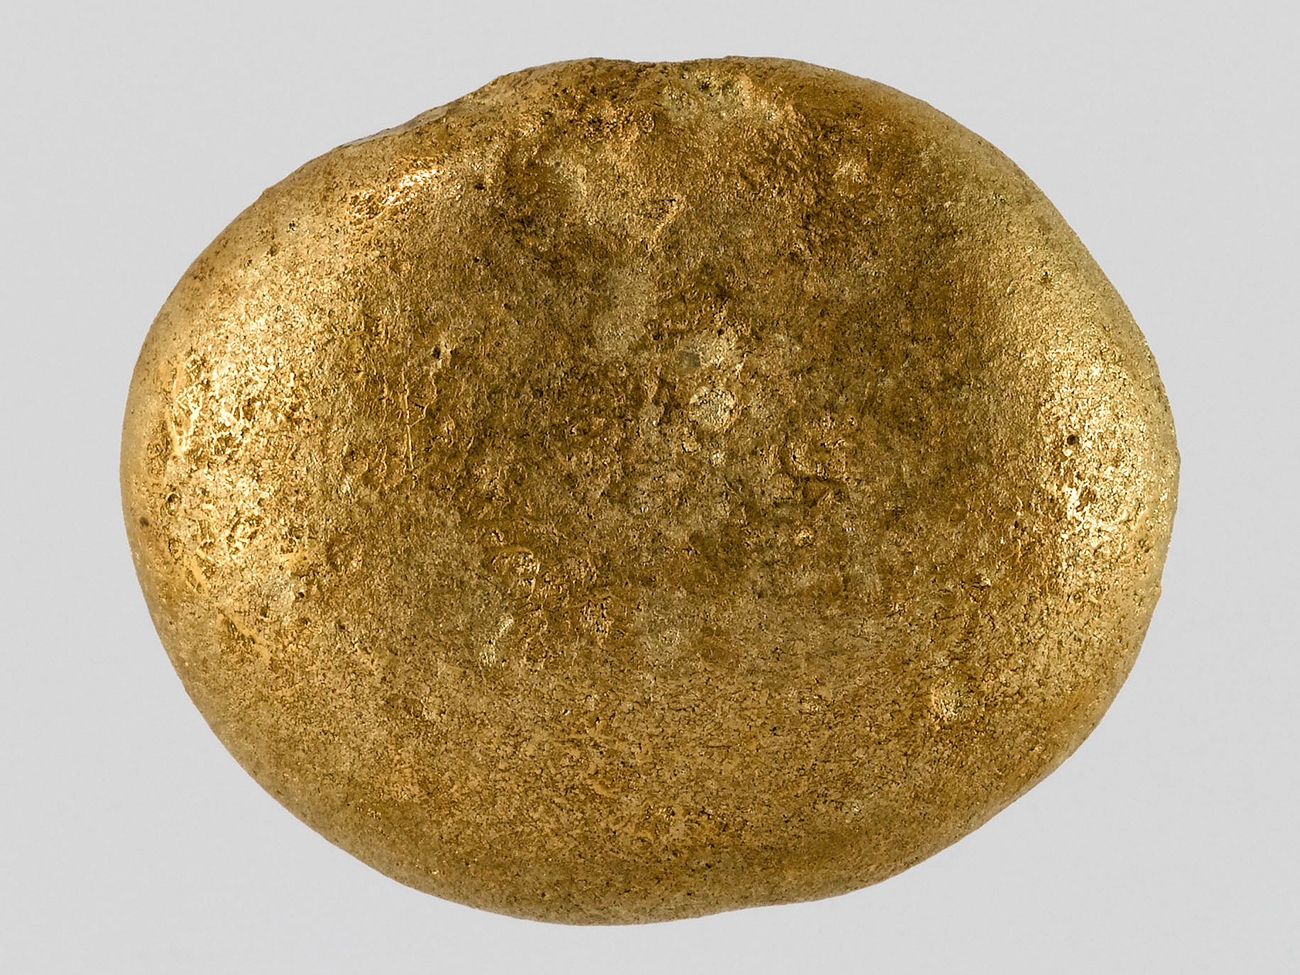 Lingot en forme de disque plat, Elam (actuel Iran), Suse, vers 1500-1200 av. J.-C. © Musée du Louuvre, département des Antiquités orientales, Paris